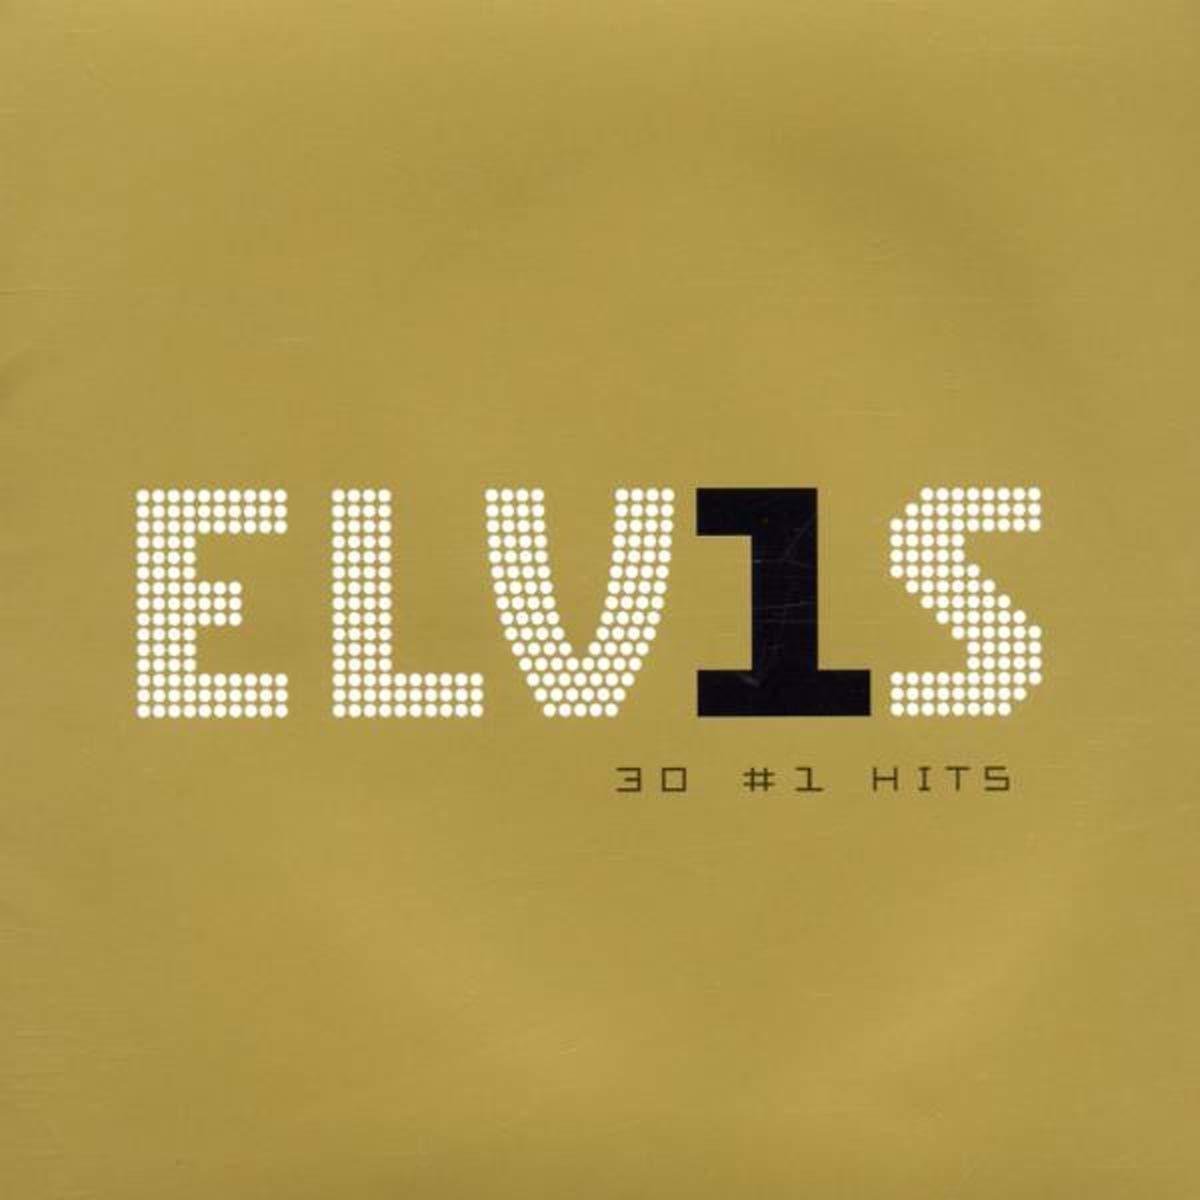 Elvis Presley - Elvis 30 #1 Hits (Gold Coloured) (2 LP) Elvis Presley